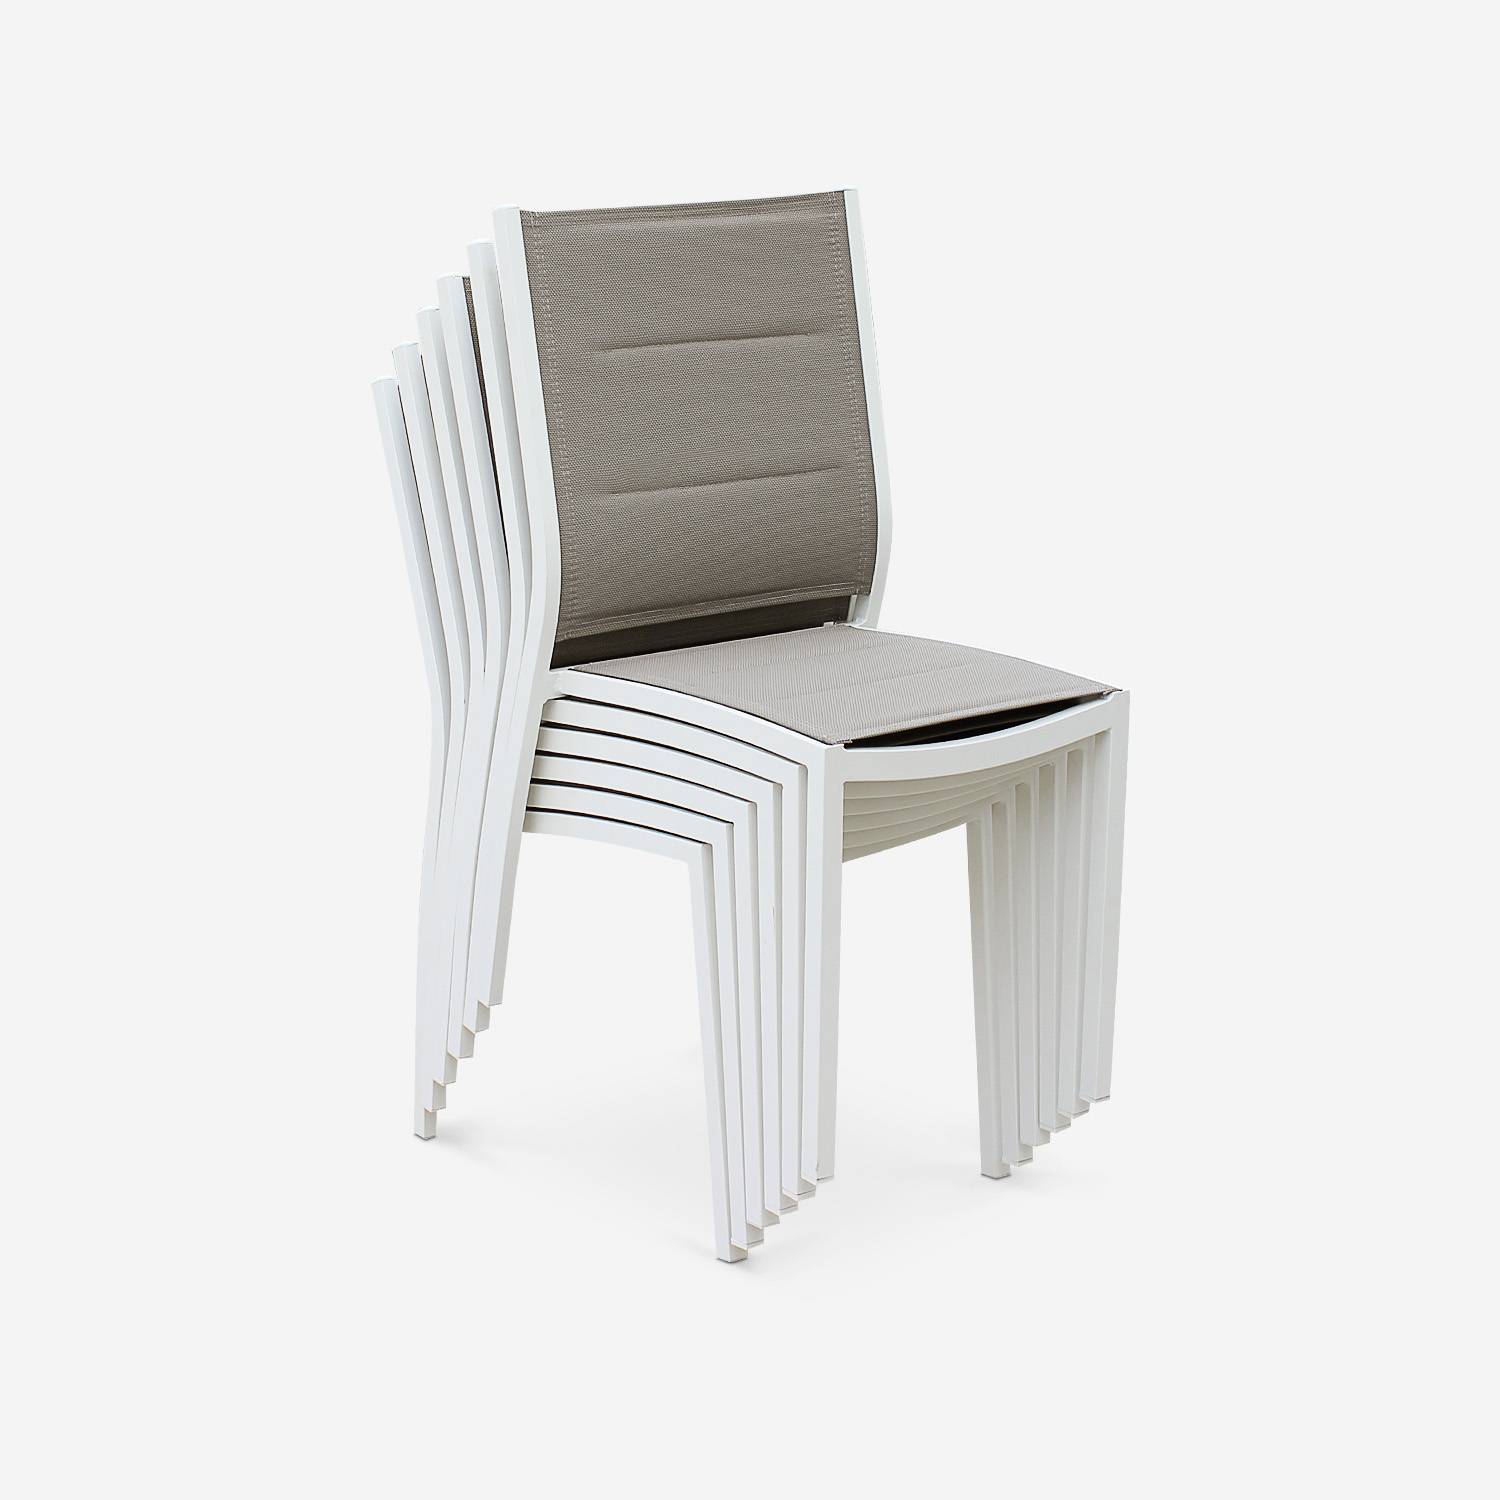 Coppia di sedie Chicago/Odenton in alluminio bianco e textilene colore marrone talpa,sweeek,Photo4